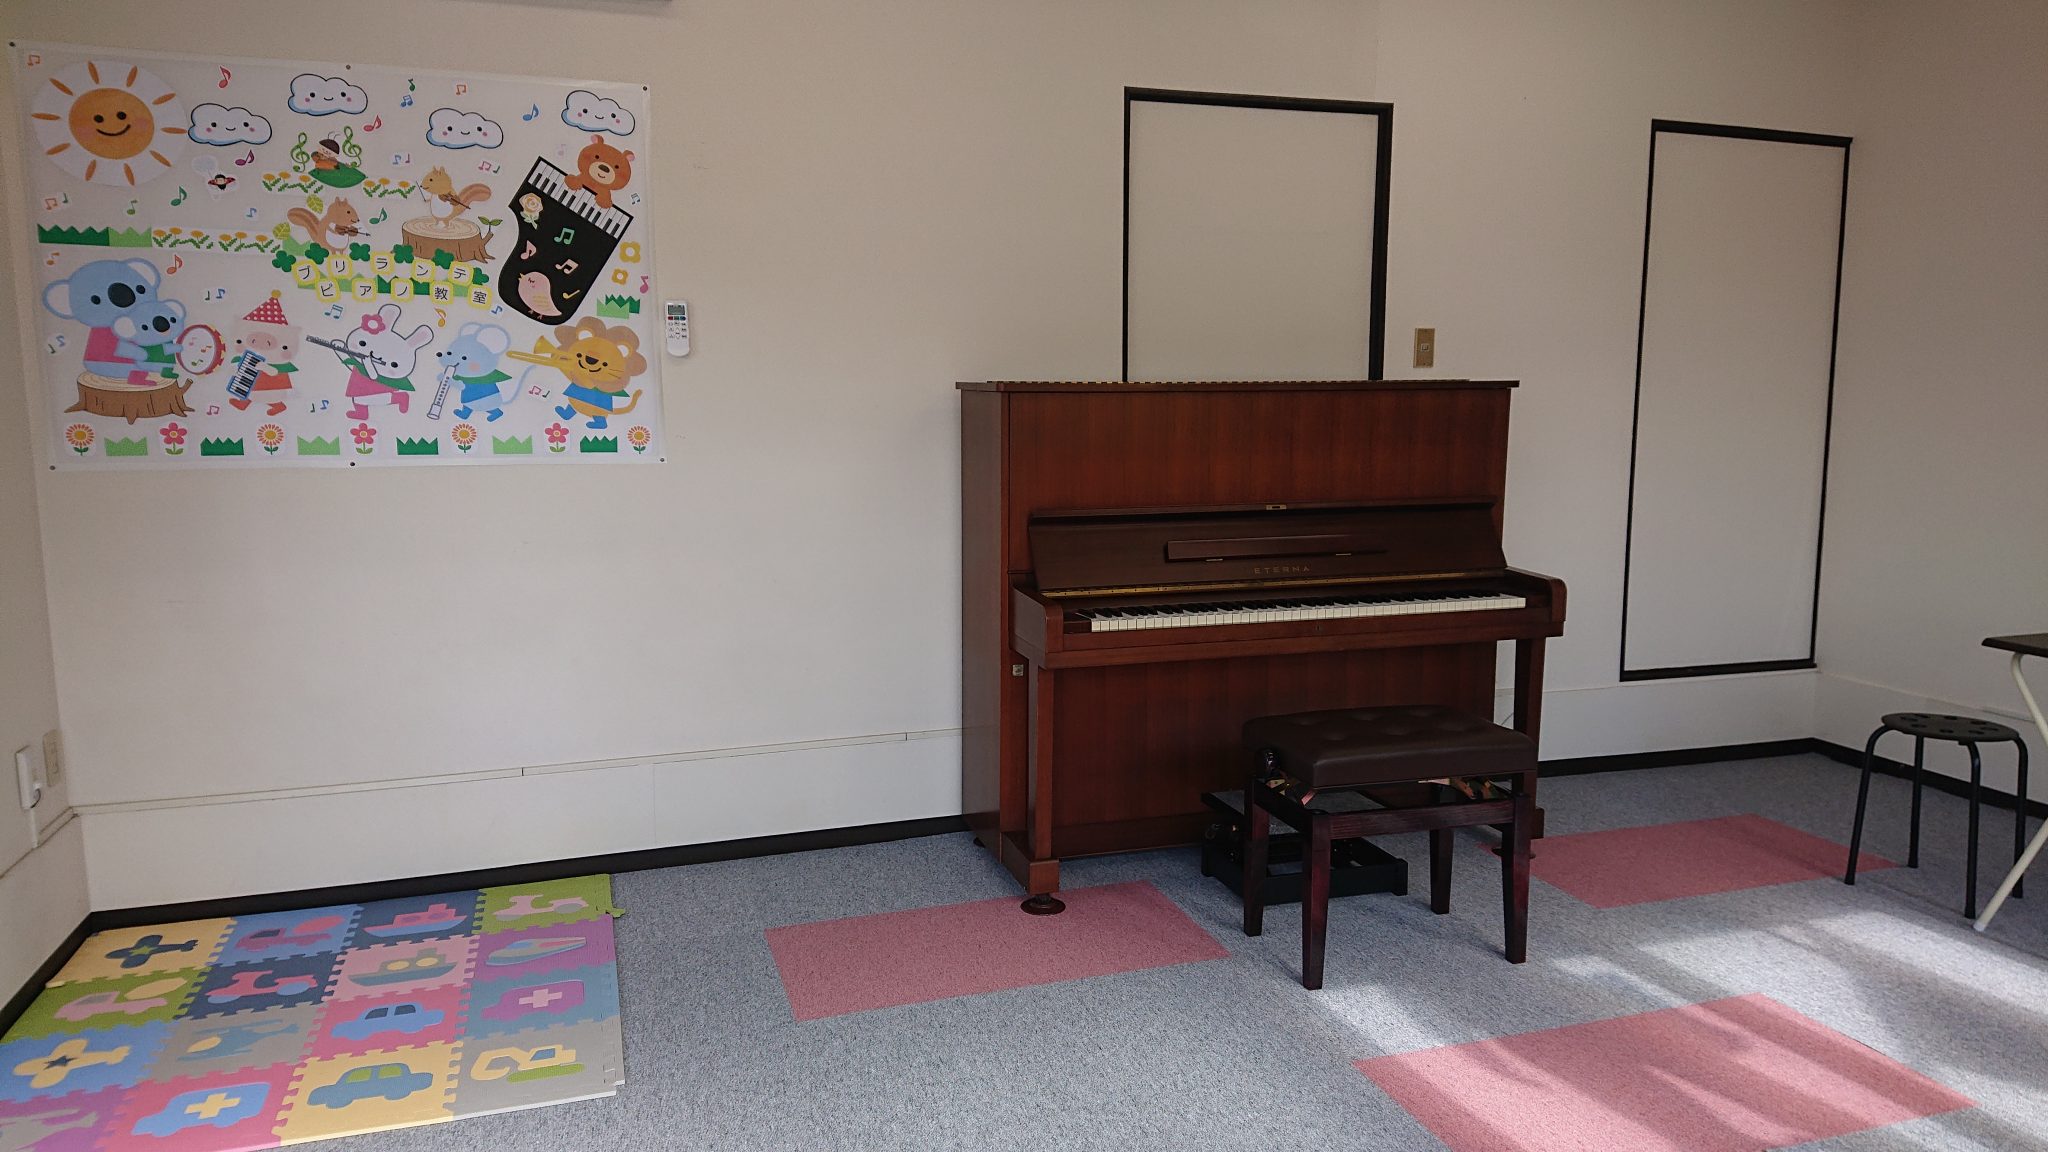 ブリランテピアノ教室 | 金沢市・野々市市のピアノ教室 | 押野教室、新神田教室、米泉教室